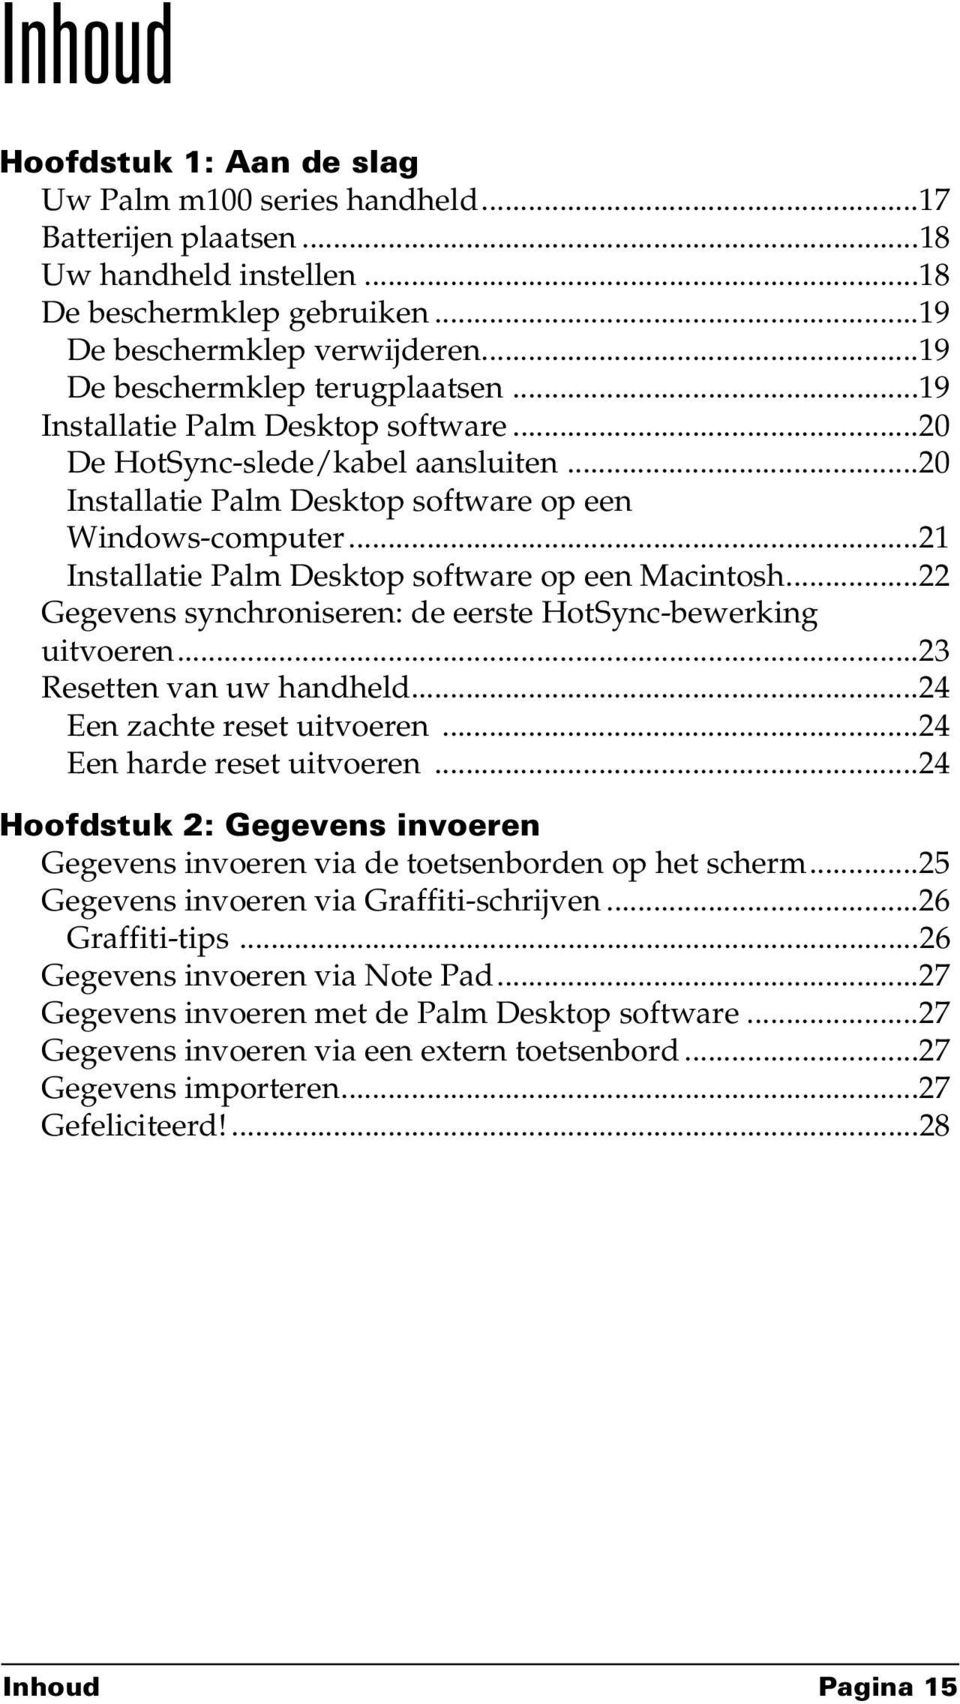 ..21 Installatie Palm Desktop software op een Macintosh...22 Gegevens synchroniseren: de eerste HotSync-bewerking uitvoeren...23 Resetten van uw handheld...24 Een zachte reset uitvoeren.